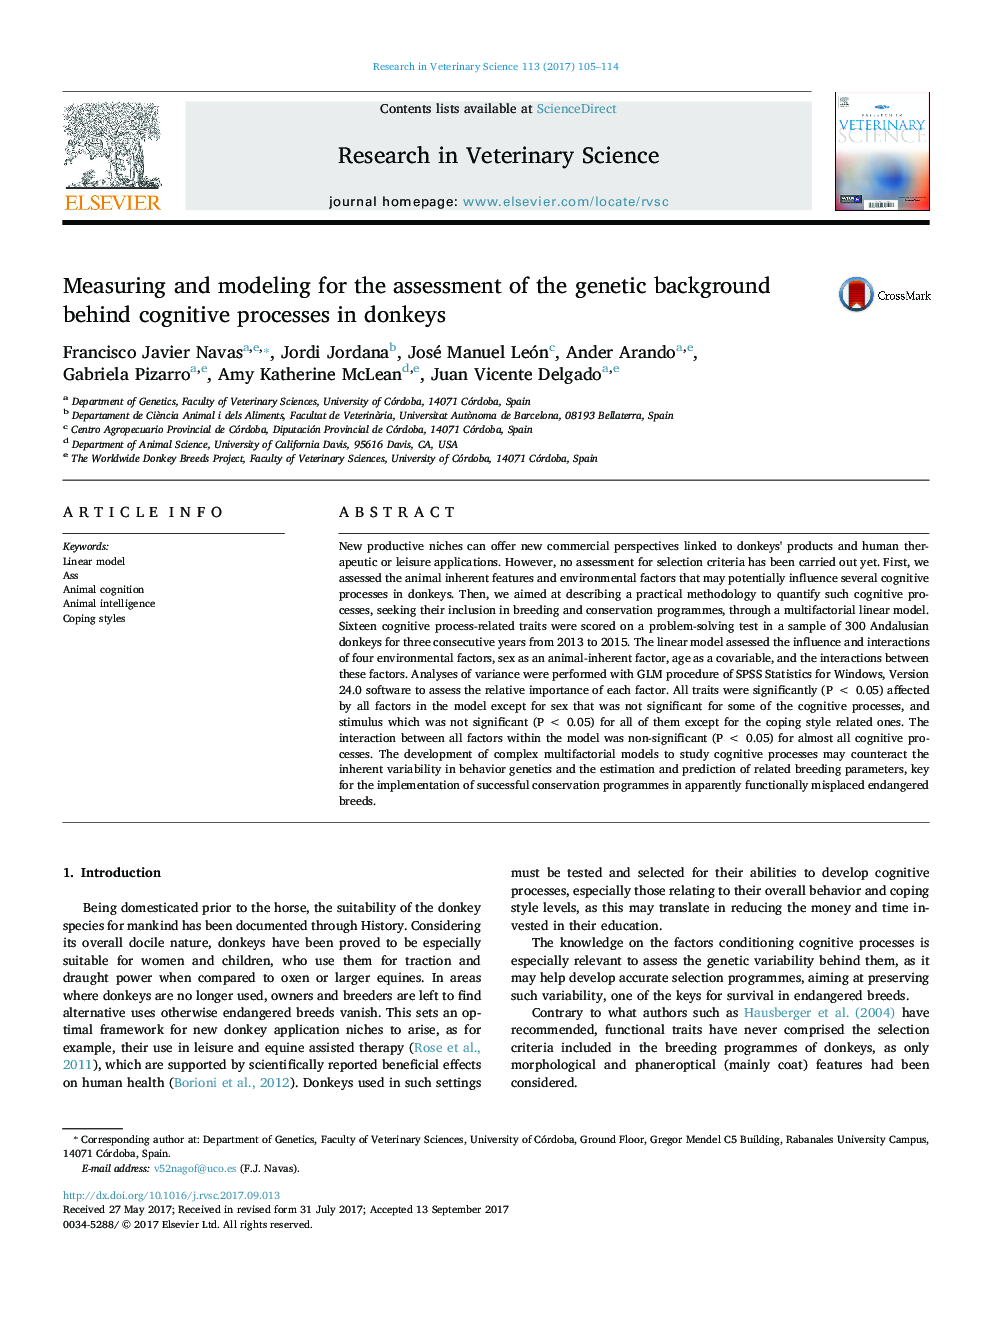 اندازه گیری و مدل سازی برای ارزیابی زمینه ژنتیکی در فرایند شناختی در الاغ 